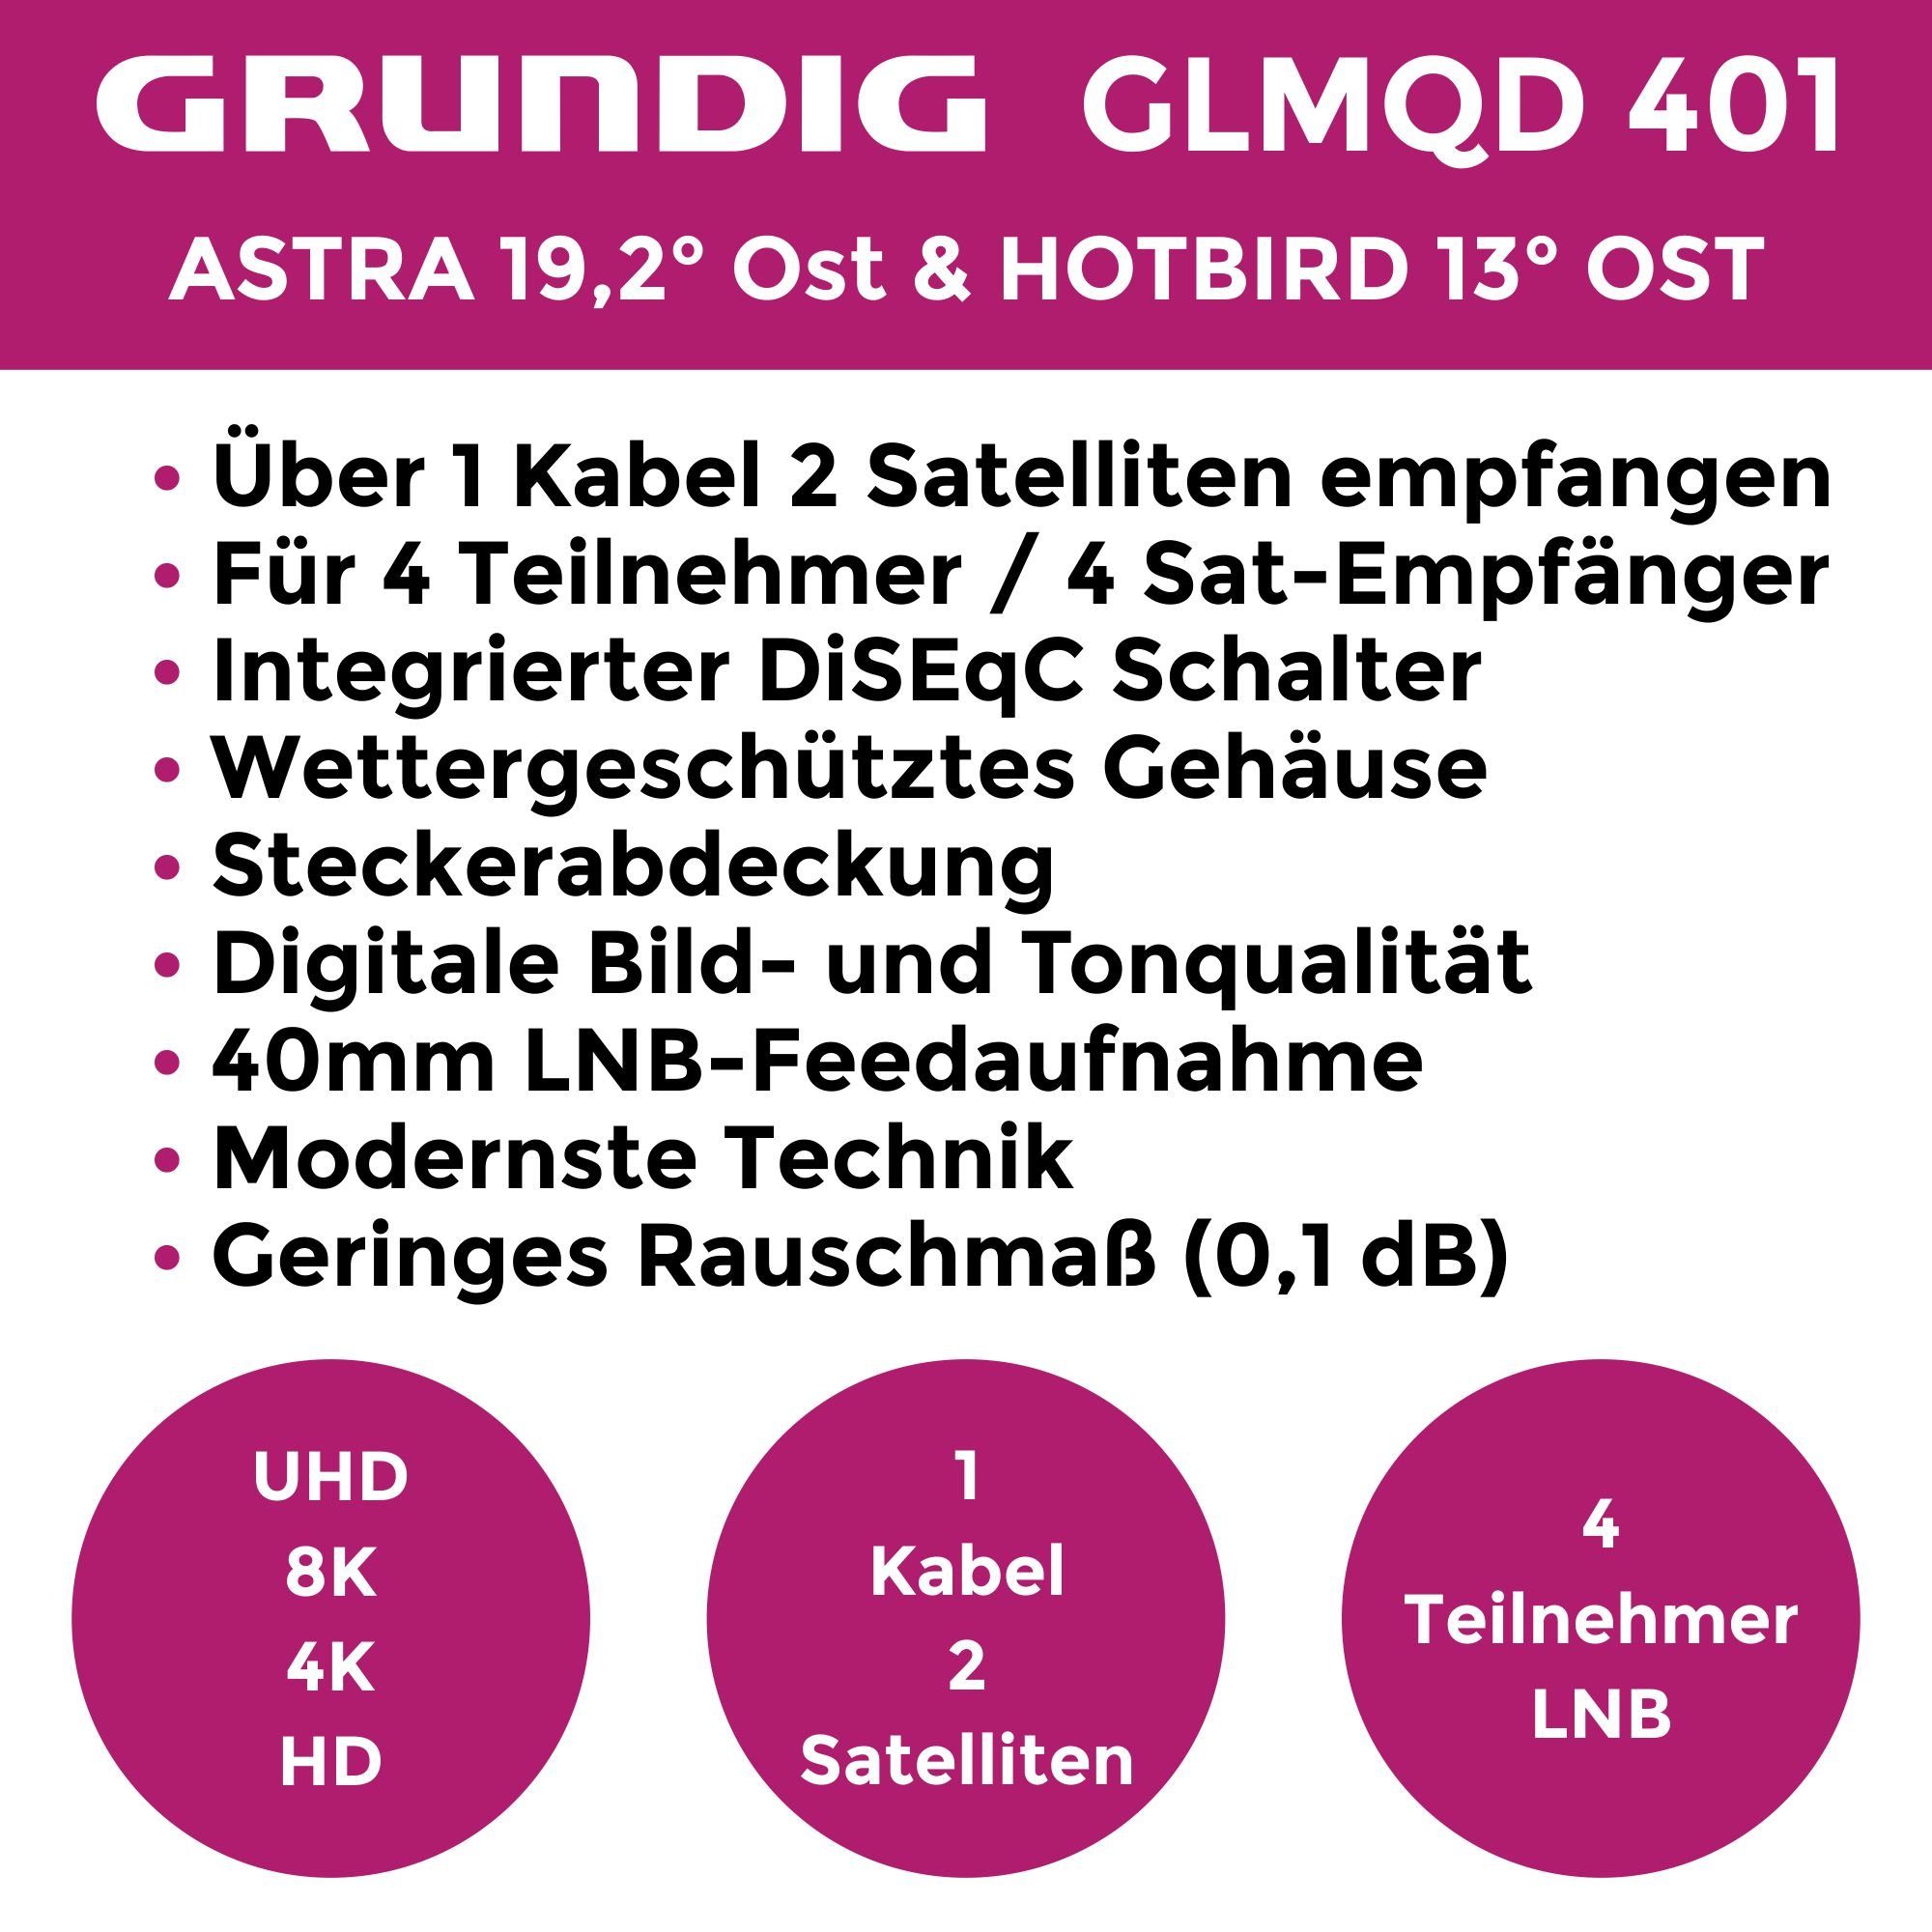 Aufdrehhilfe Monoblock-LNB 401 Teilnehmer - Quad Gummitülle) mit Satelliten Hotbird & (4 + Astra GLMQD GSS 2 Monoblock